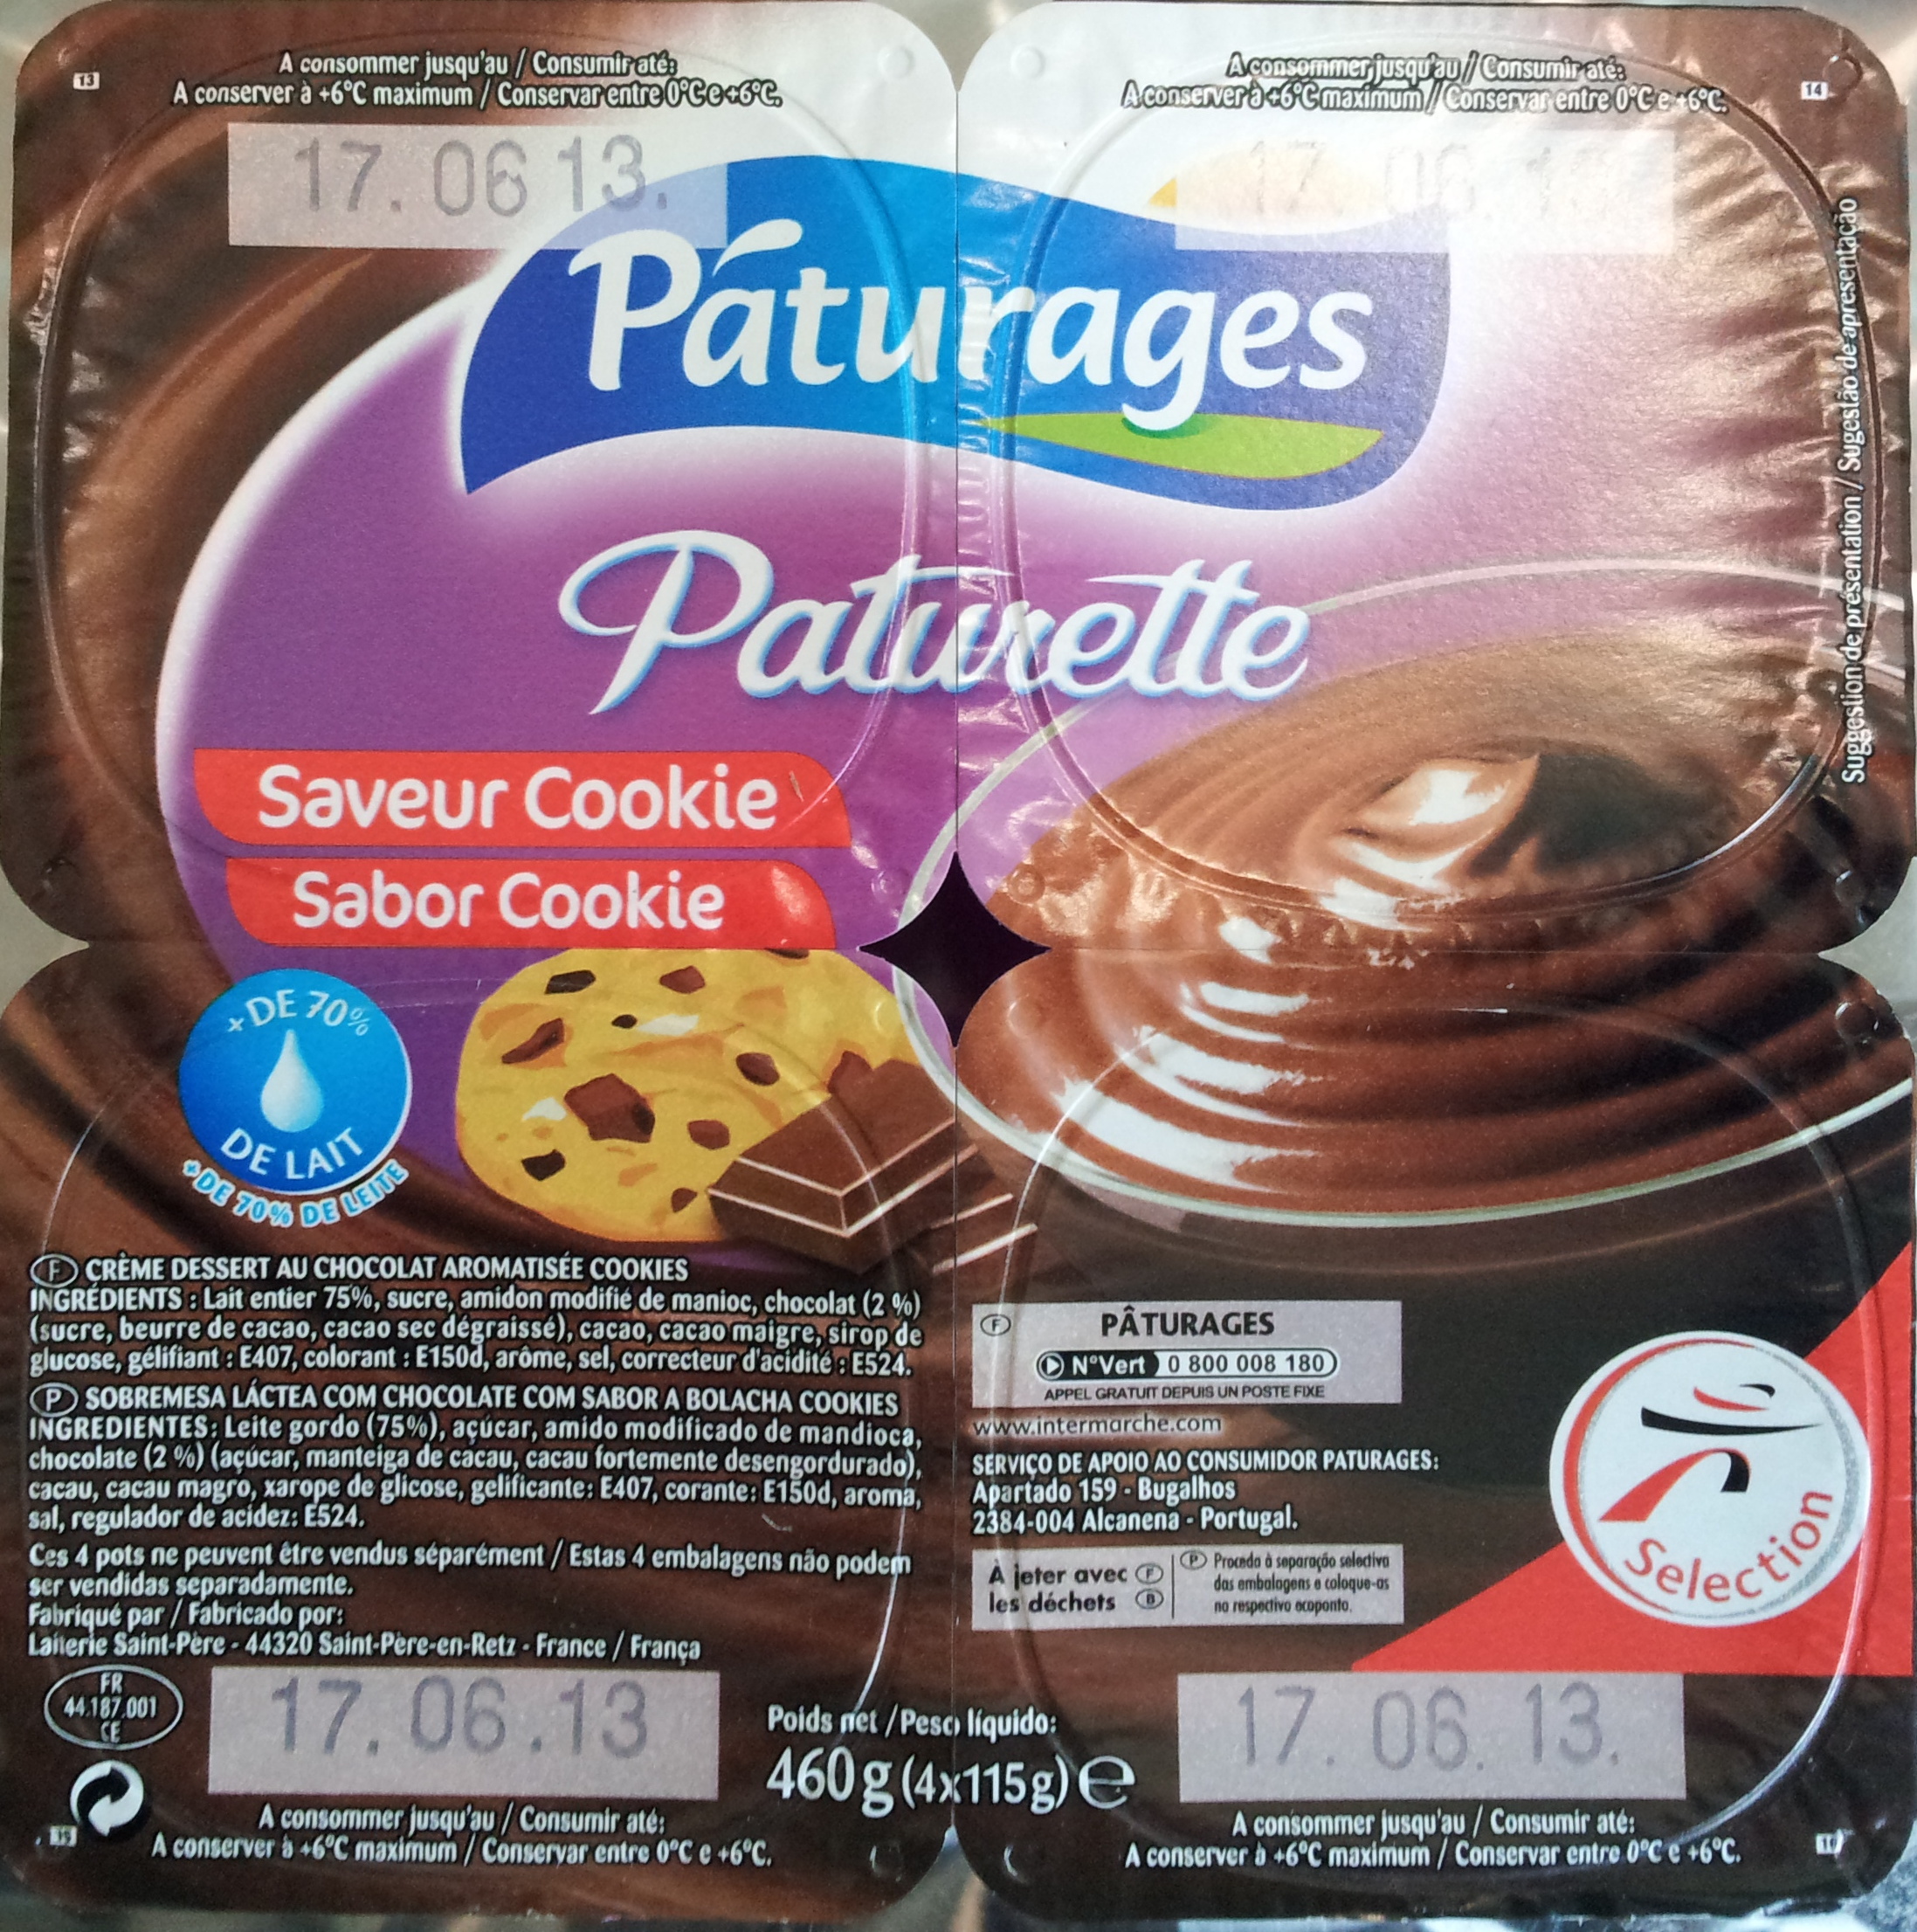 Paturette Saveur Cookie - Product - fr